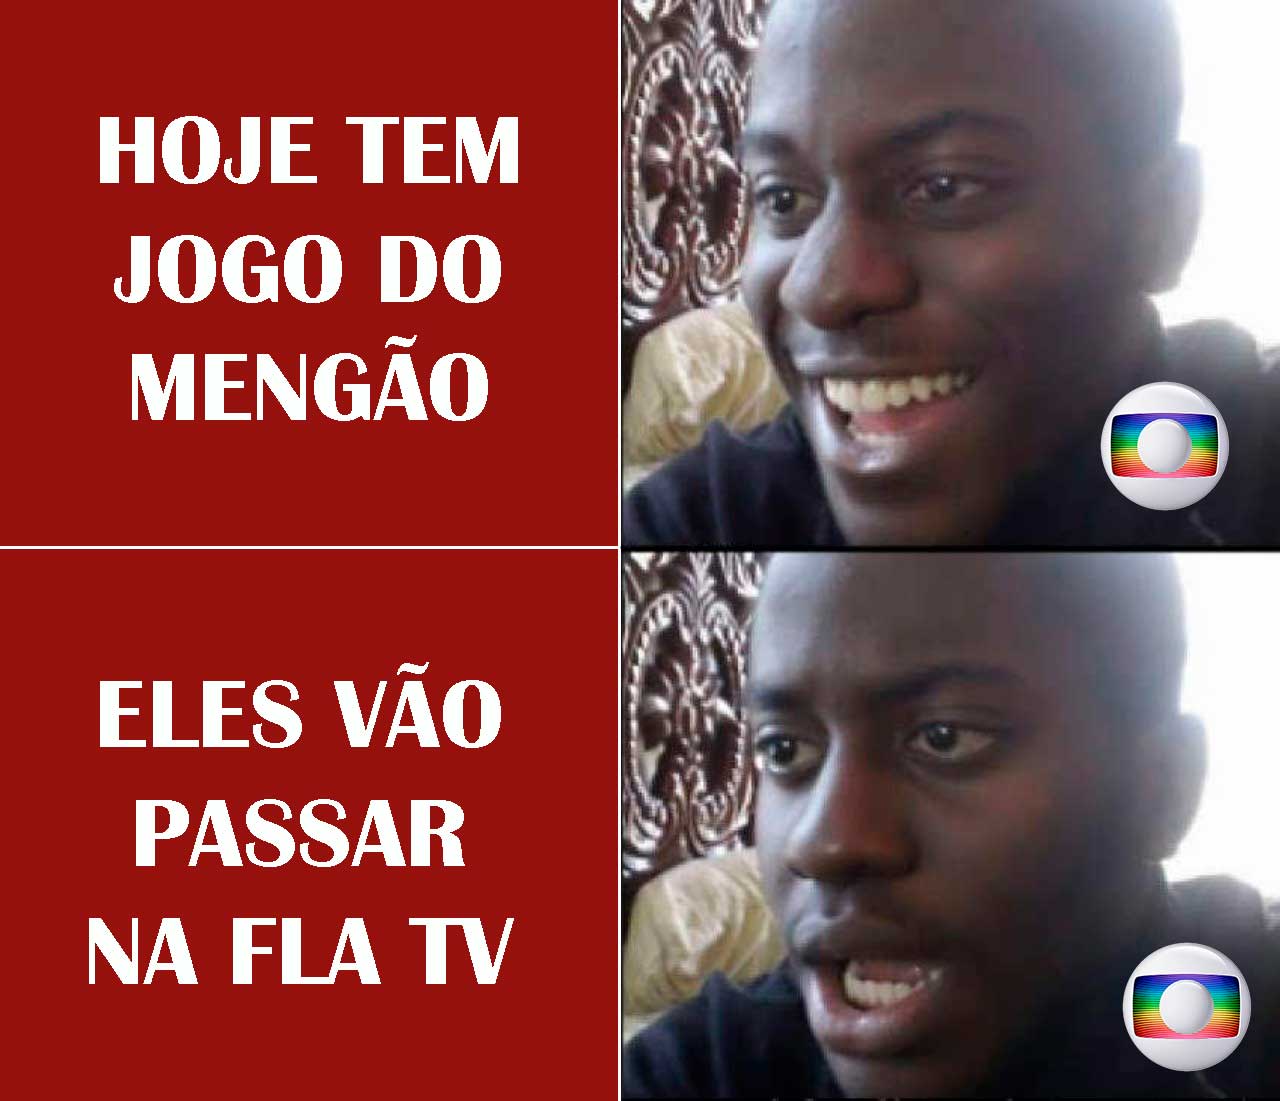 Atrito entre Flamengo e Globo rende memes entre os flamenguistas